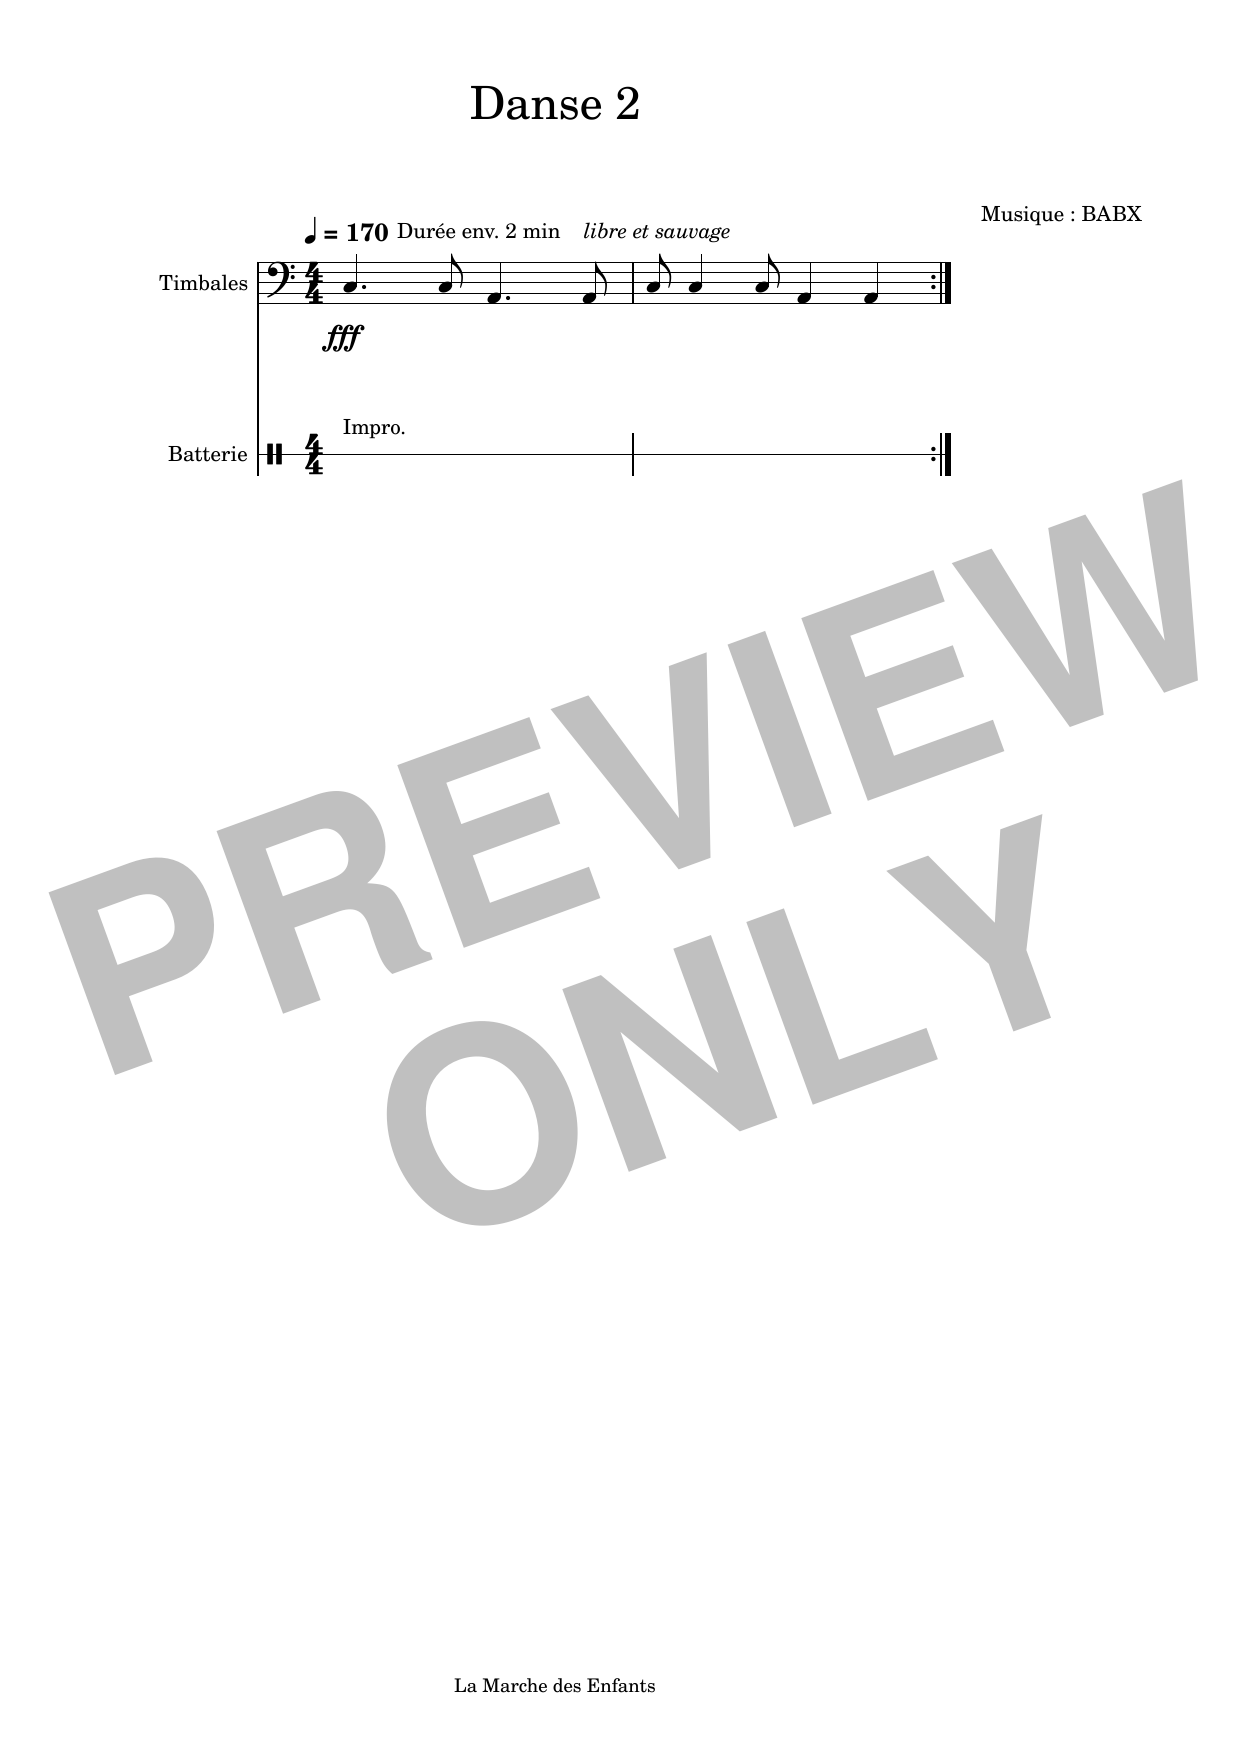 David Babin (Babx) Danse 2 sheet music notes printable PDF score